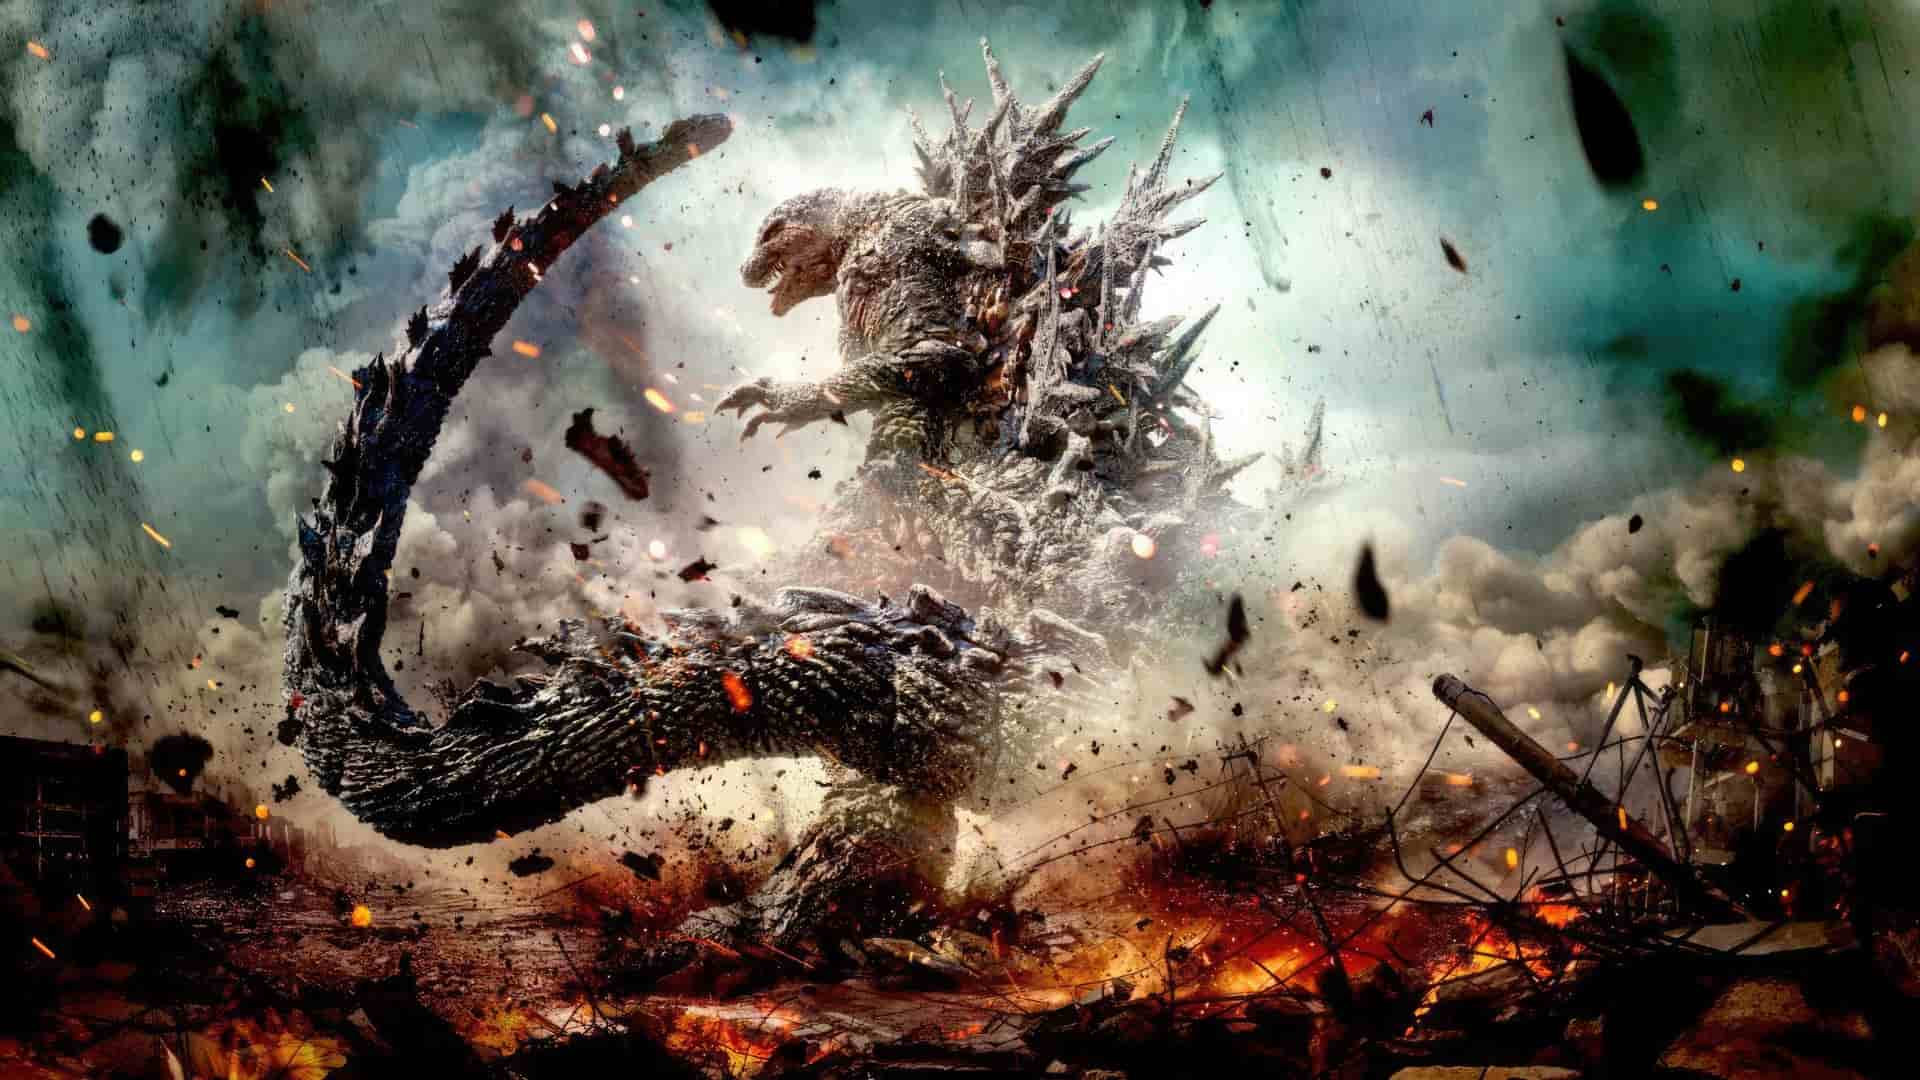 دانلود فیلم Godzilla Minus One 2023